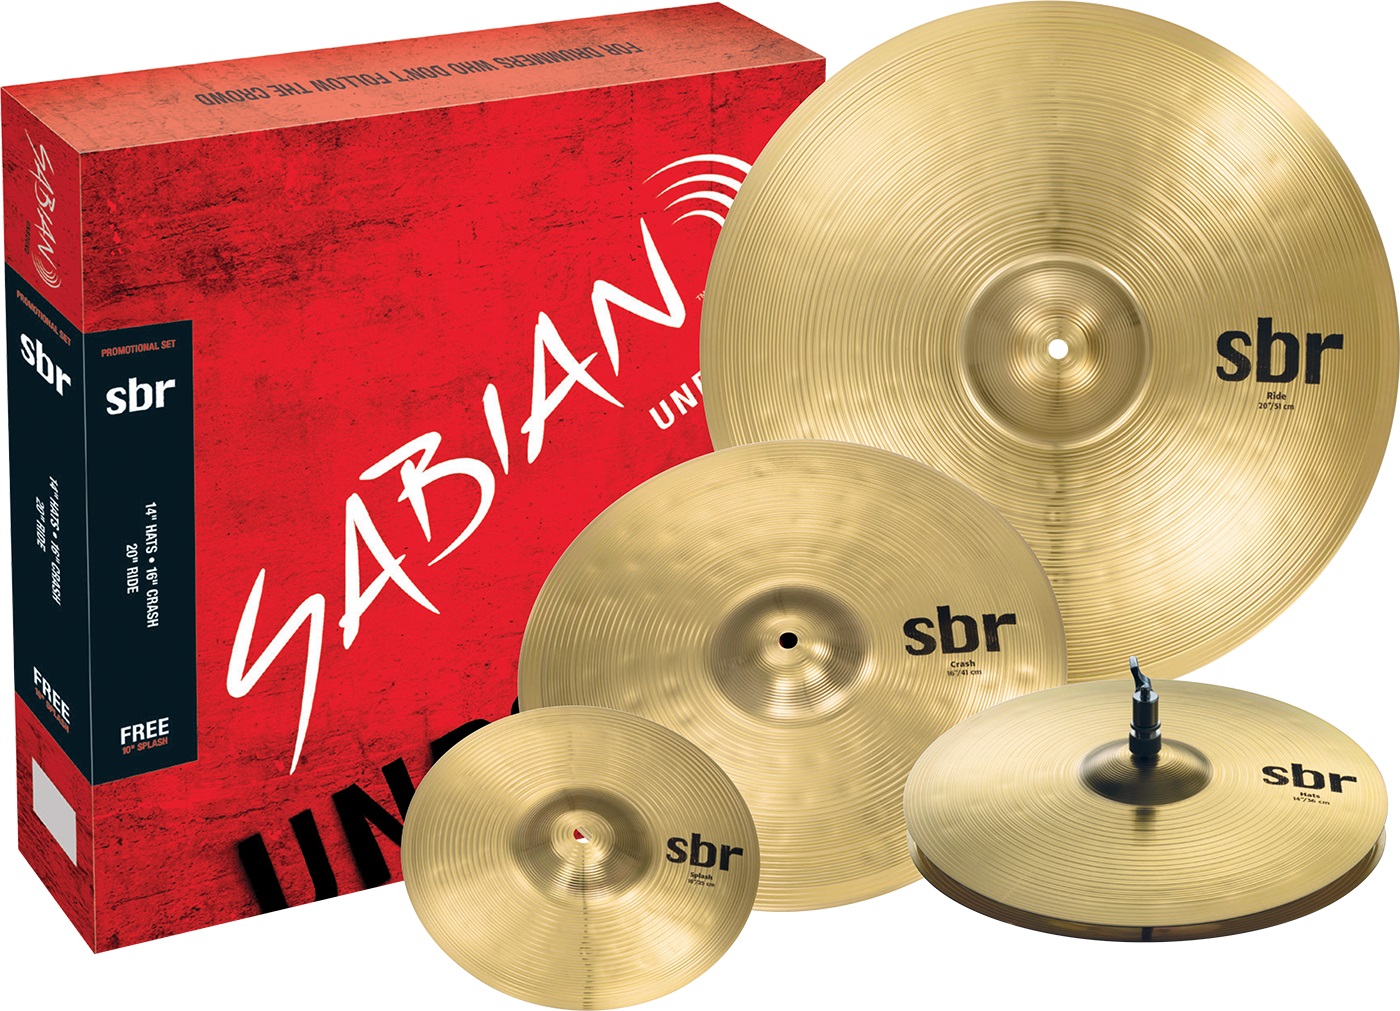 Тарелки, барабаны для ударных установок Sabian SBr Promotional Pack тарелки барабаны для ударных установок sabian 18 b8x medium crash